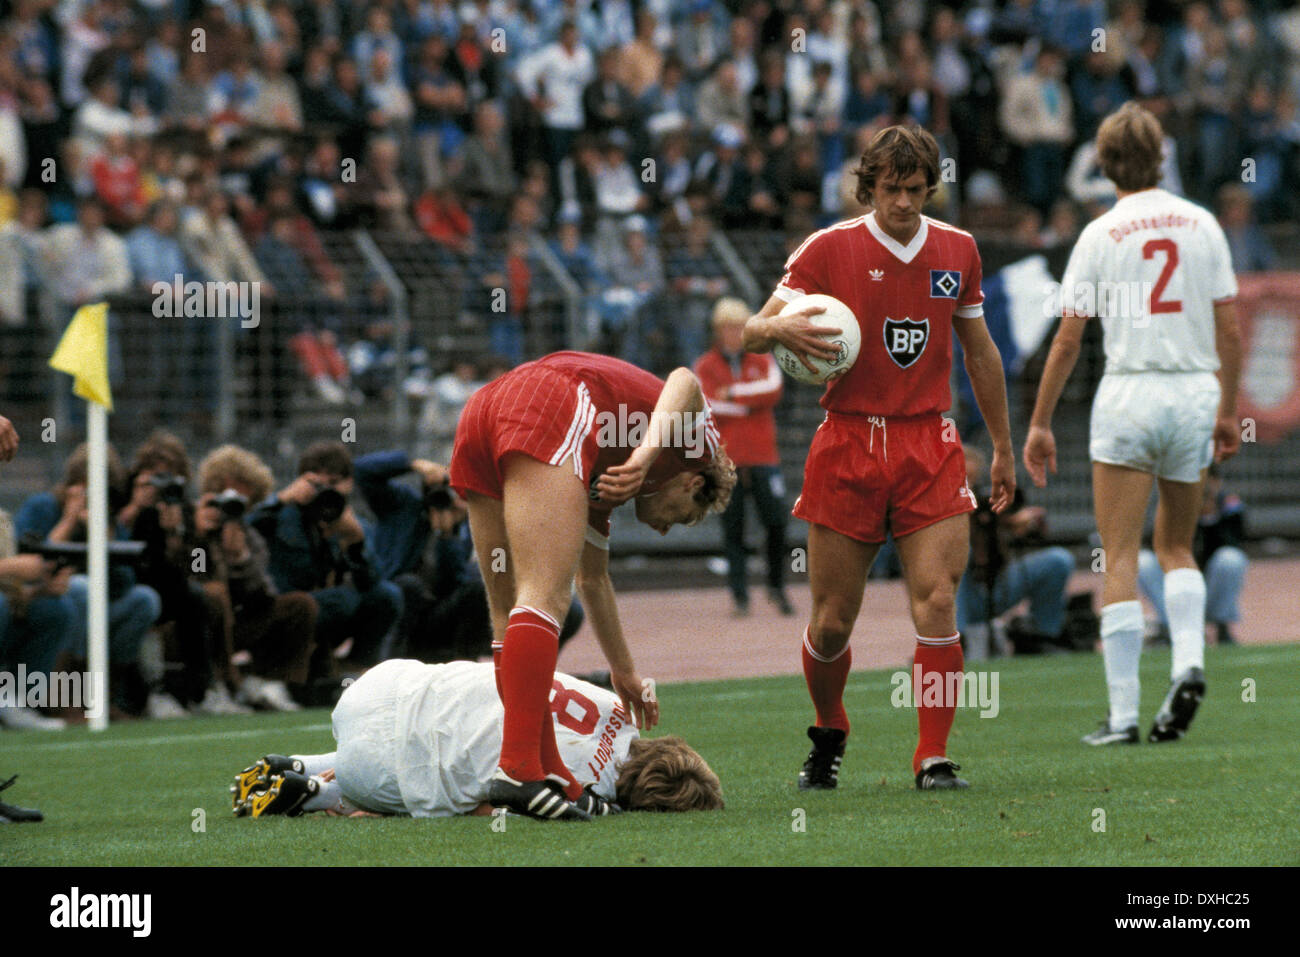 Calcio, Bundesliga, 1983/1984, Reno Stadium, Fortuna Duesseldorf contro Hamburger SV 2:3, scena della partita, una fortuna giocatore ferito arenarsi, Wolfgang Rolff (HSV) si prende cura di lui, 2.F.R. Bernd Wehmeyer (HSV) Foto Stock